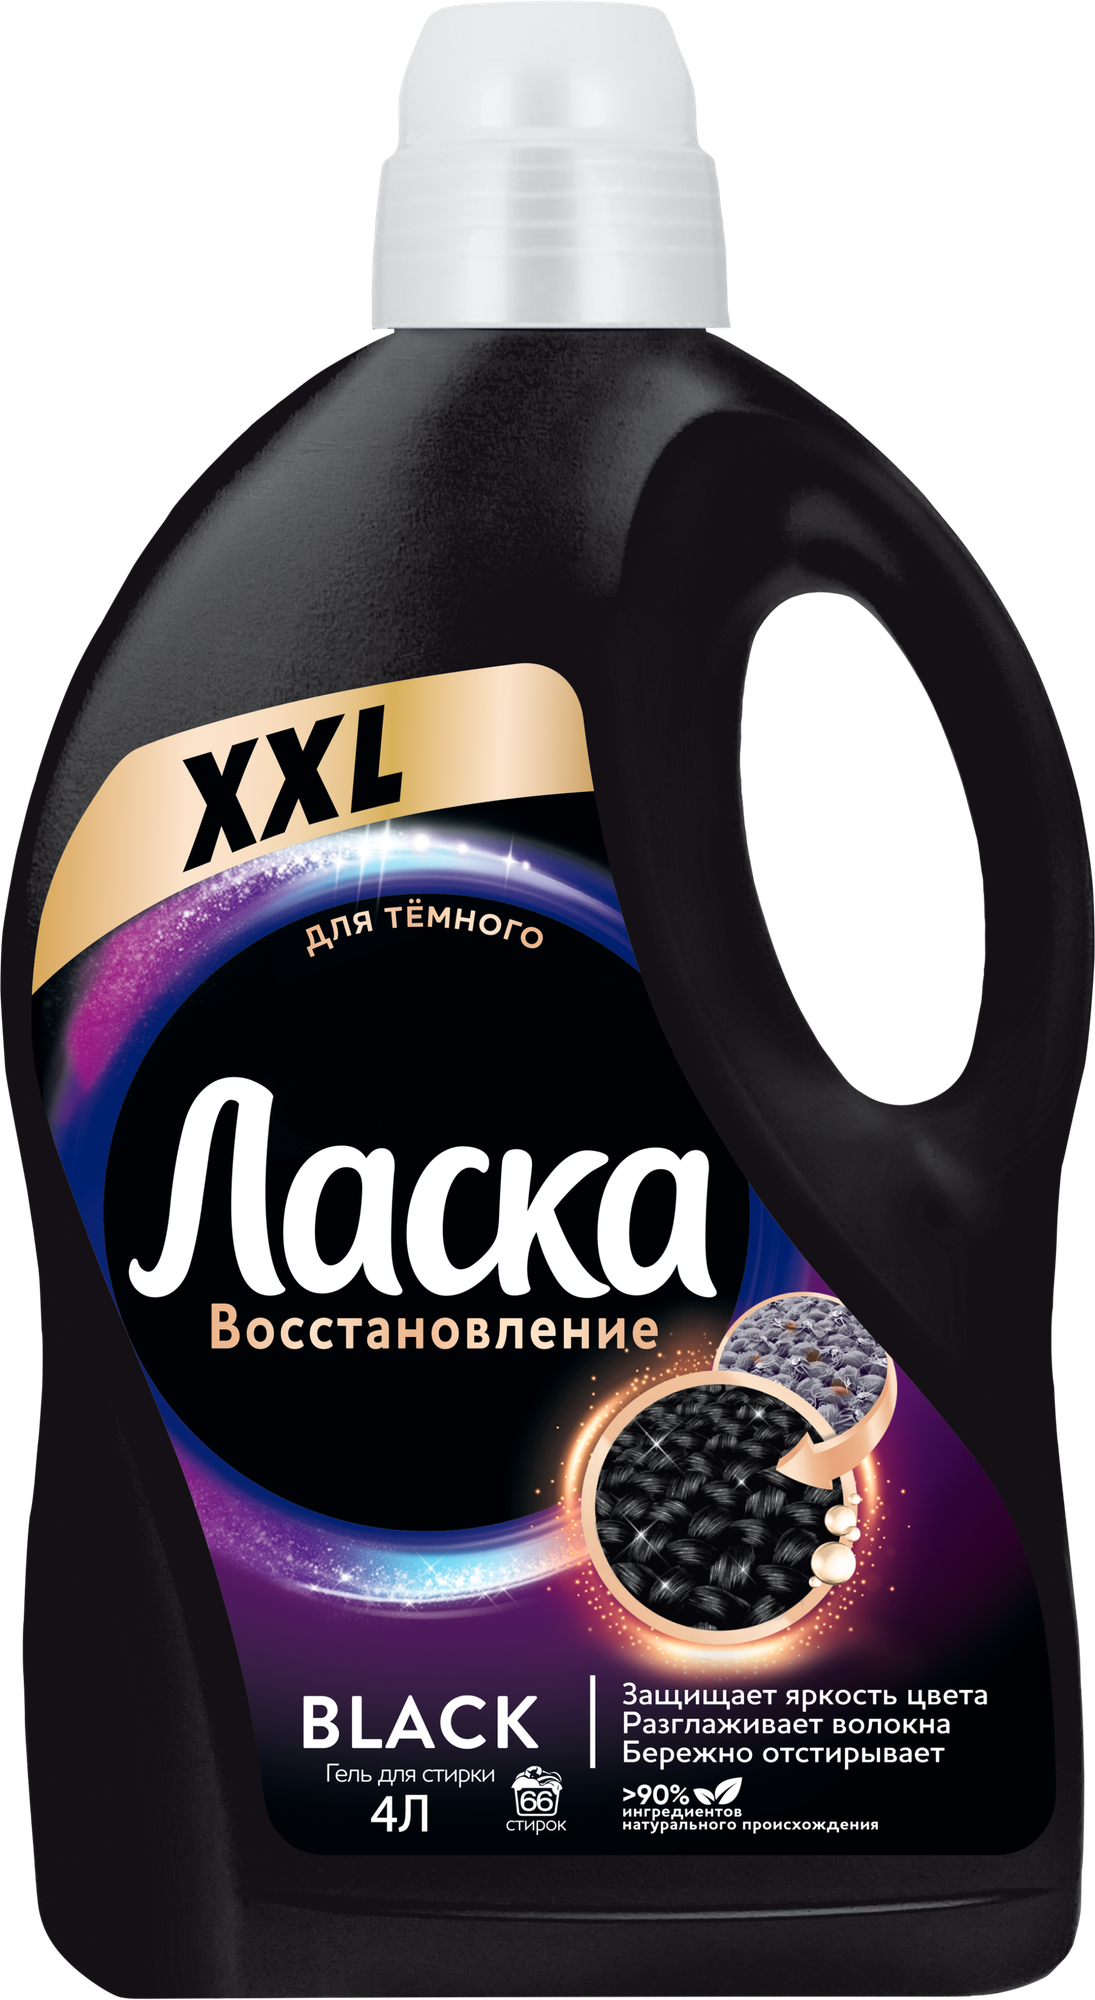 Гель для стирки Ласка "Восстановление черного", 1л — купить в интернет-магазине по низкой цене на Яндекс Маркете